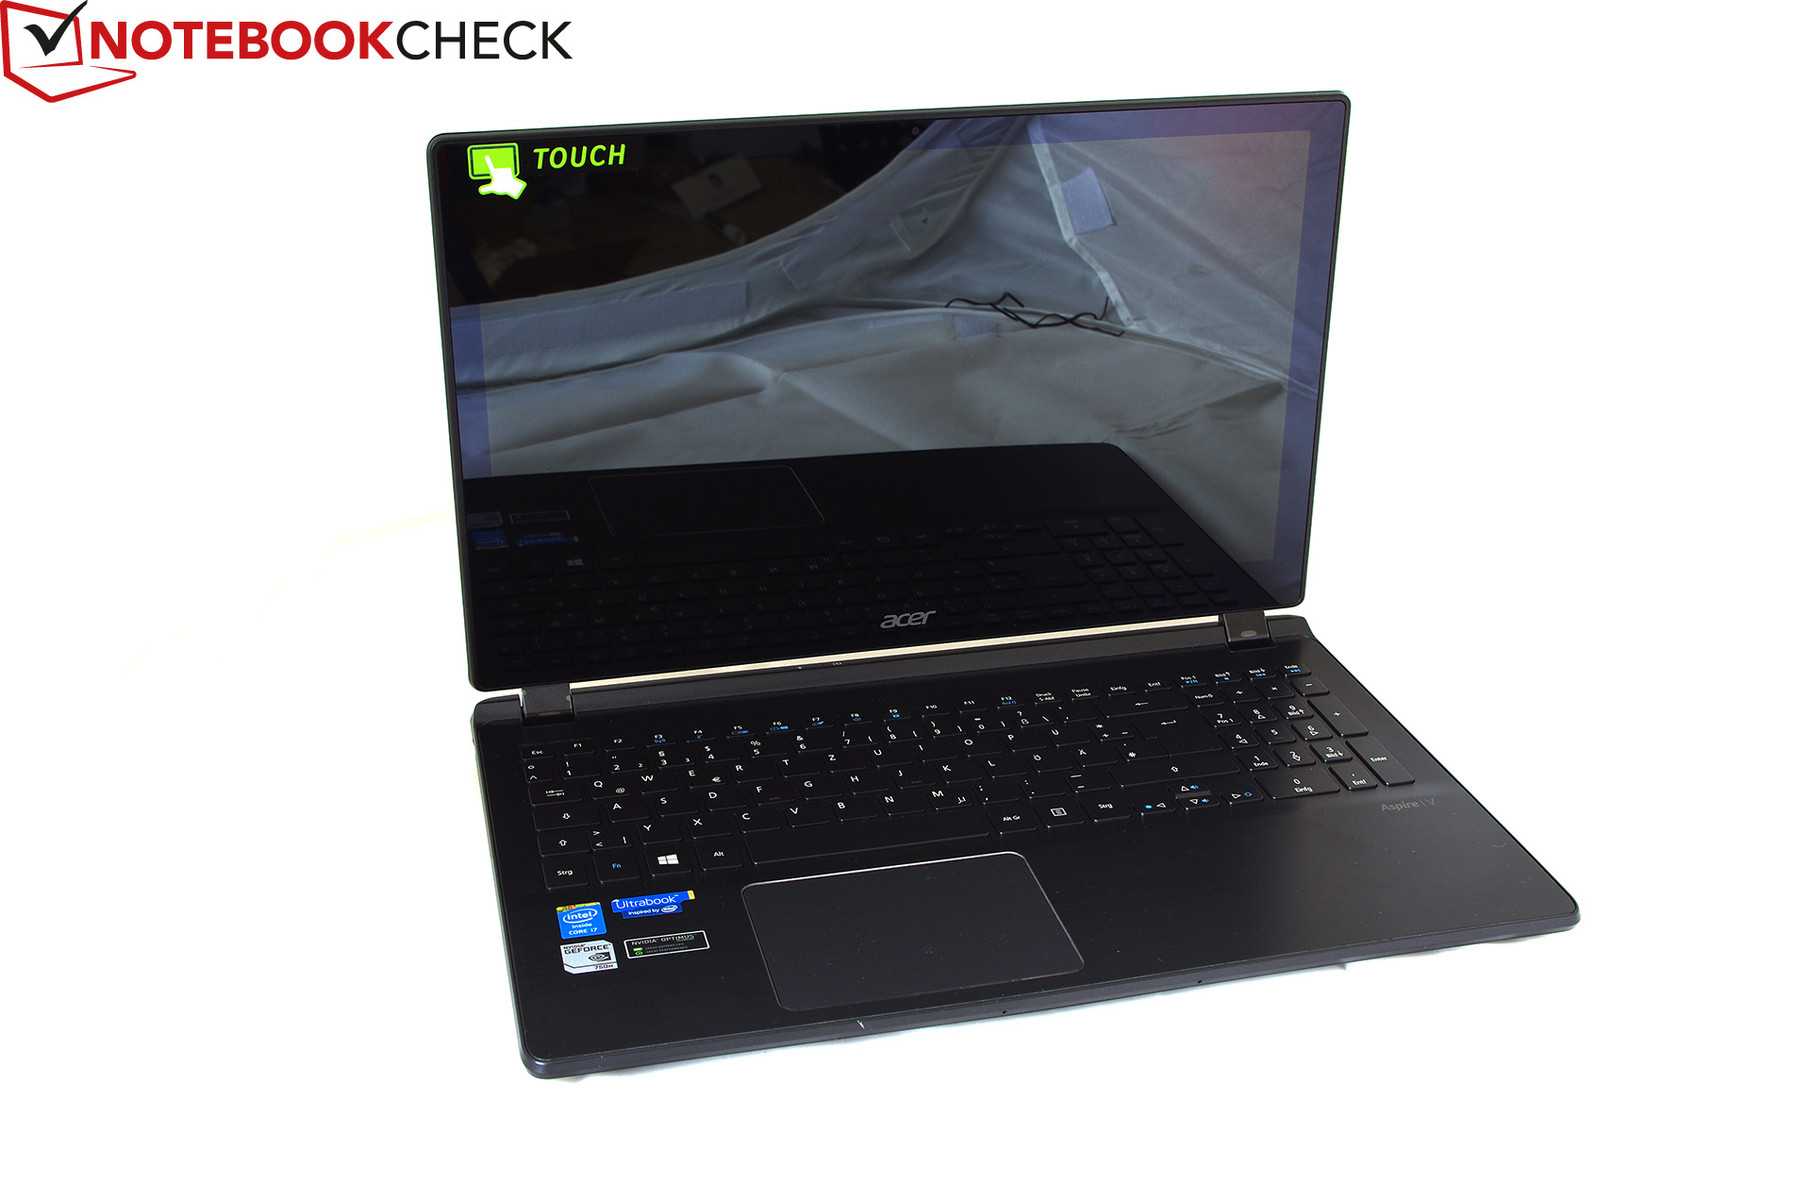 Ноутбук-планшет acer aspire v7 582pg-54208g52tii — купить, цена и характеристики, отзывы